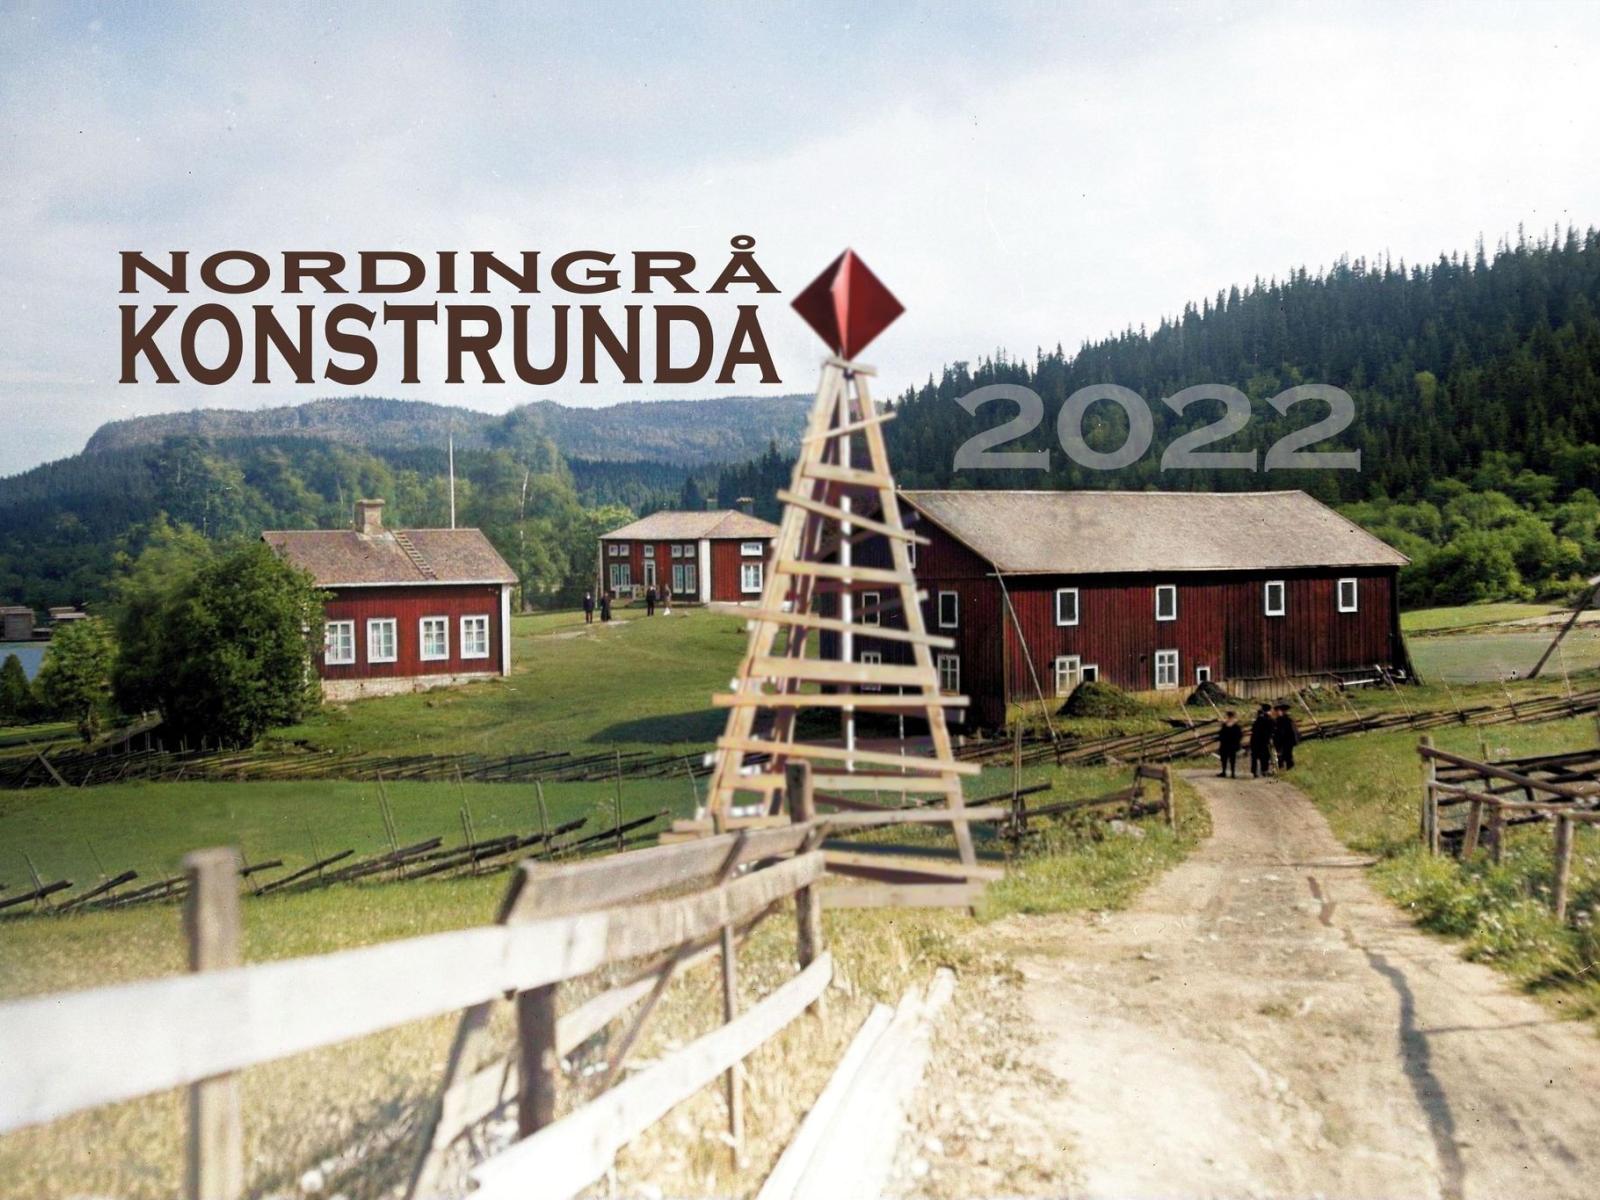 Nordingrå Konstrunda 2022